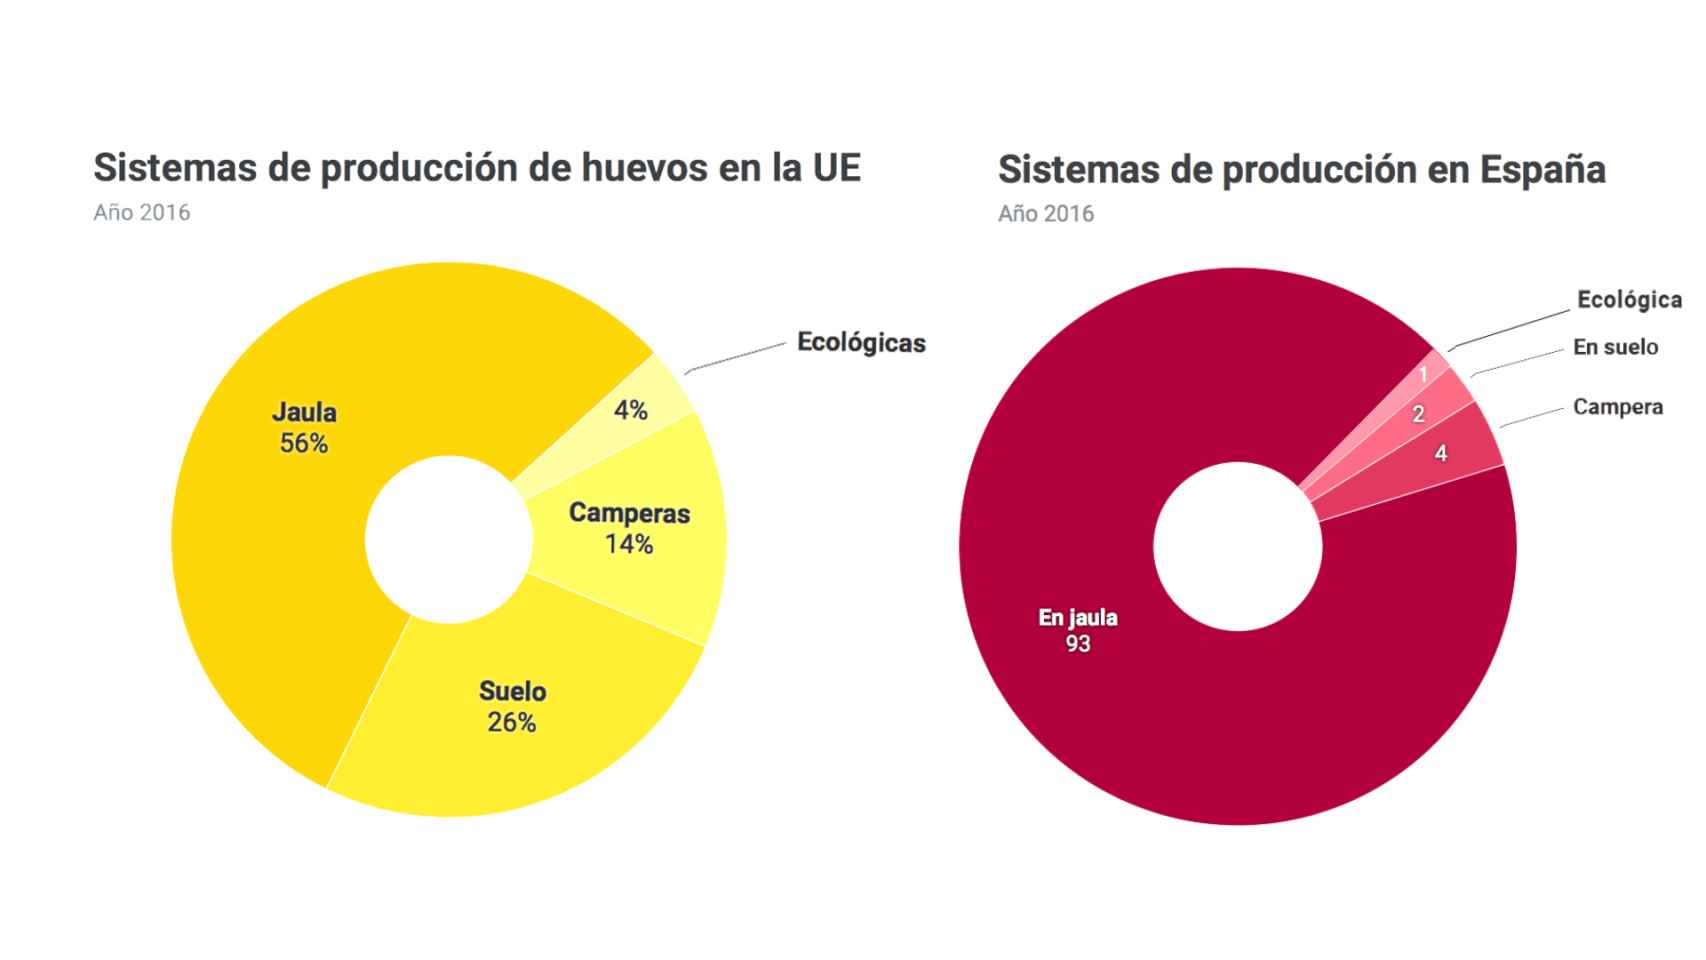 Diferencias entre los sistemas de producción de huevos en España y en la Unión Europea